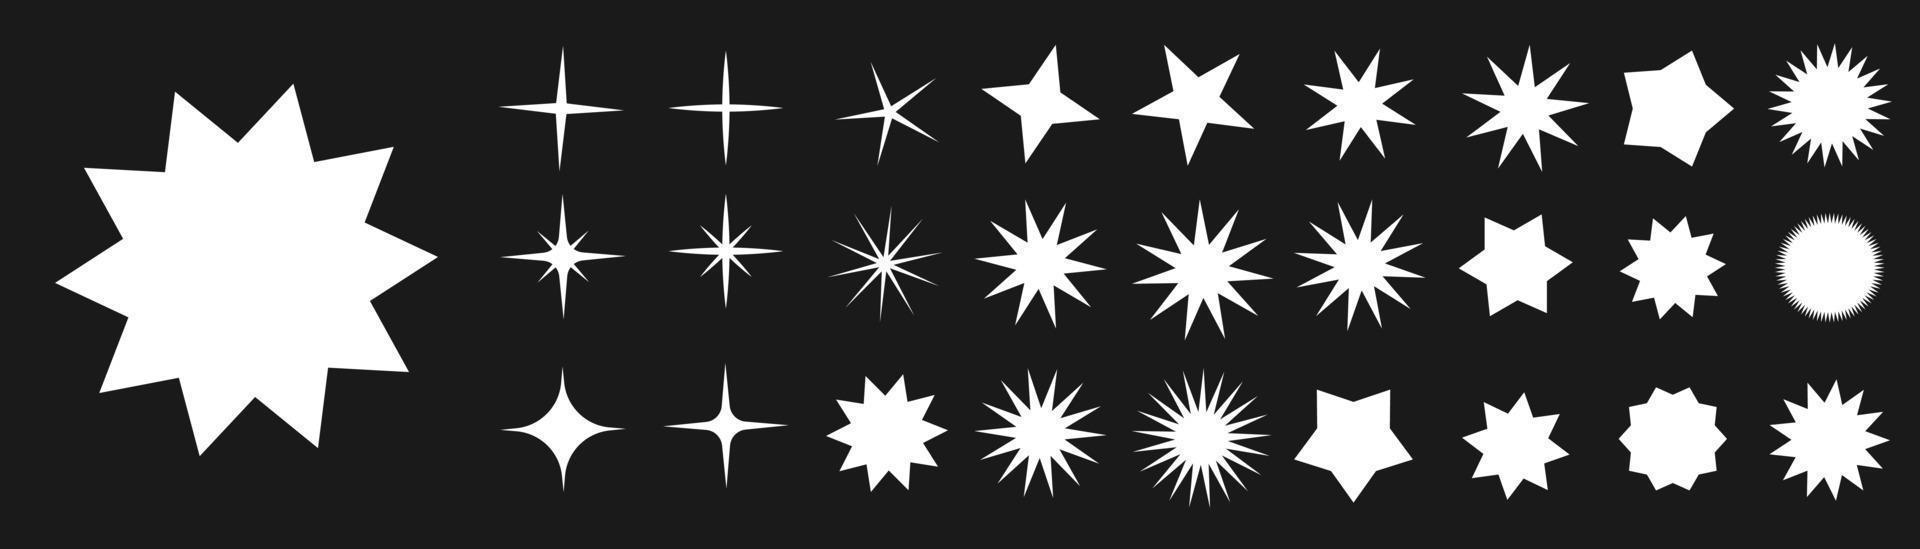 stjärna ikon. samling av illustrationer av blinkande stjärnor. gnistor, lysande explosion i de himmel. jul vektor symboler isolerat. glans eller fyrverkeri. vektor damm. platt design.